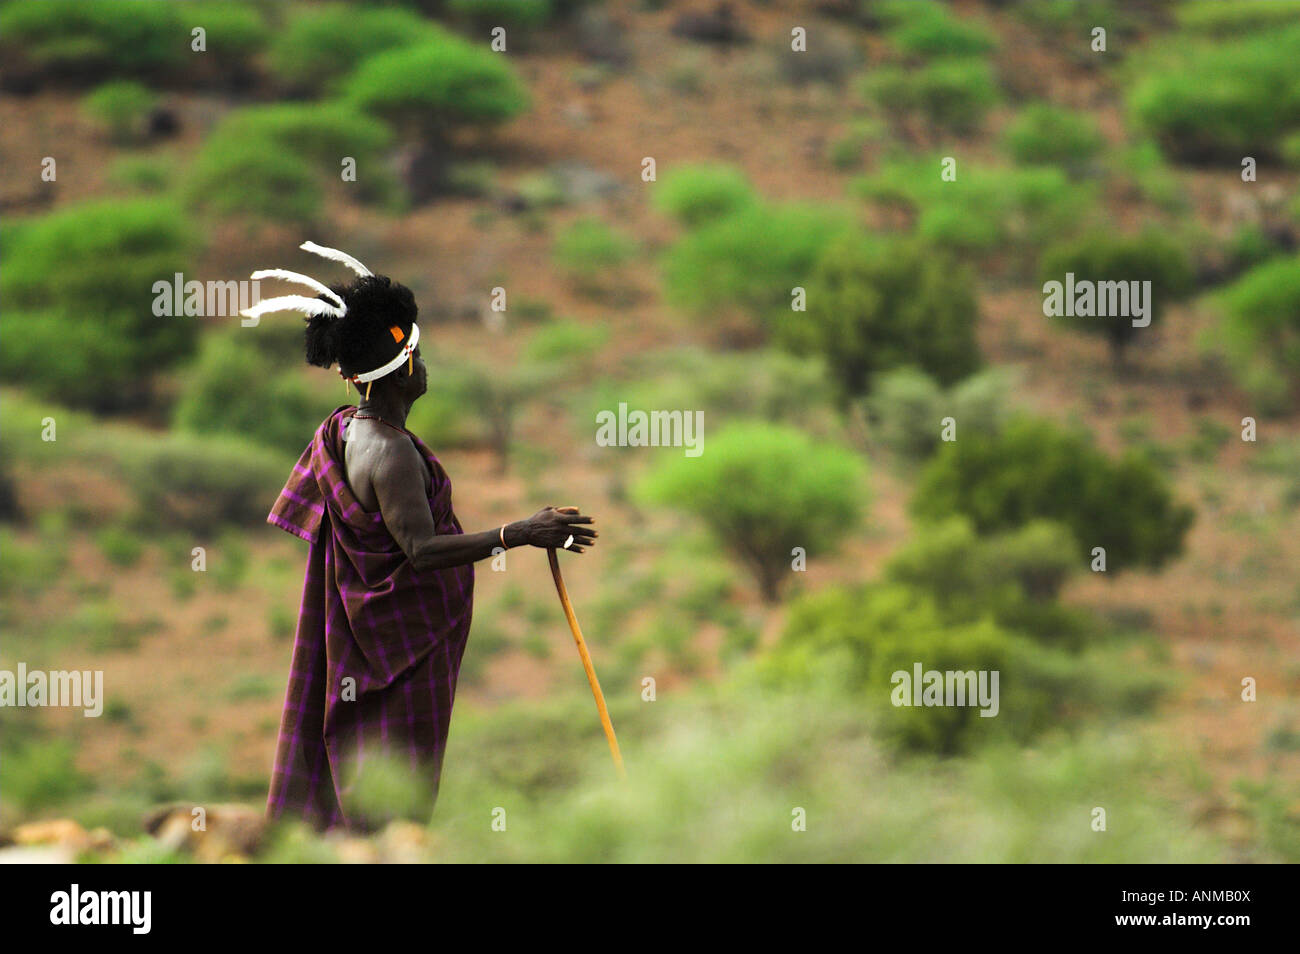 Turkana chief surveys the landscape Stock Photo